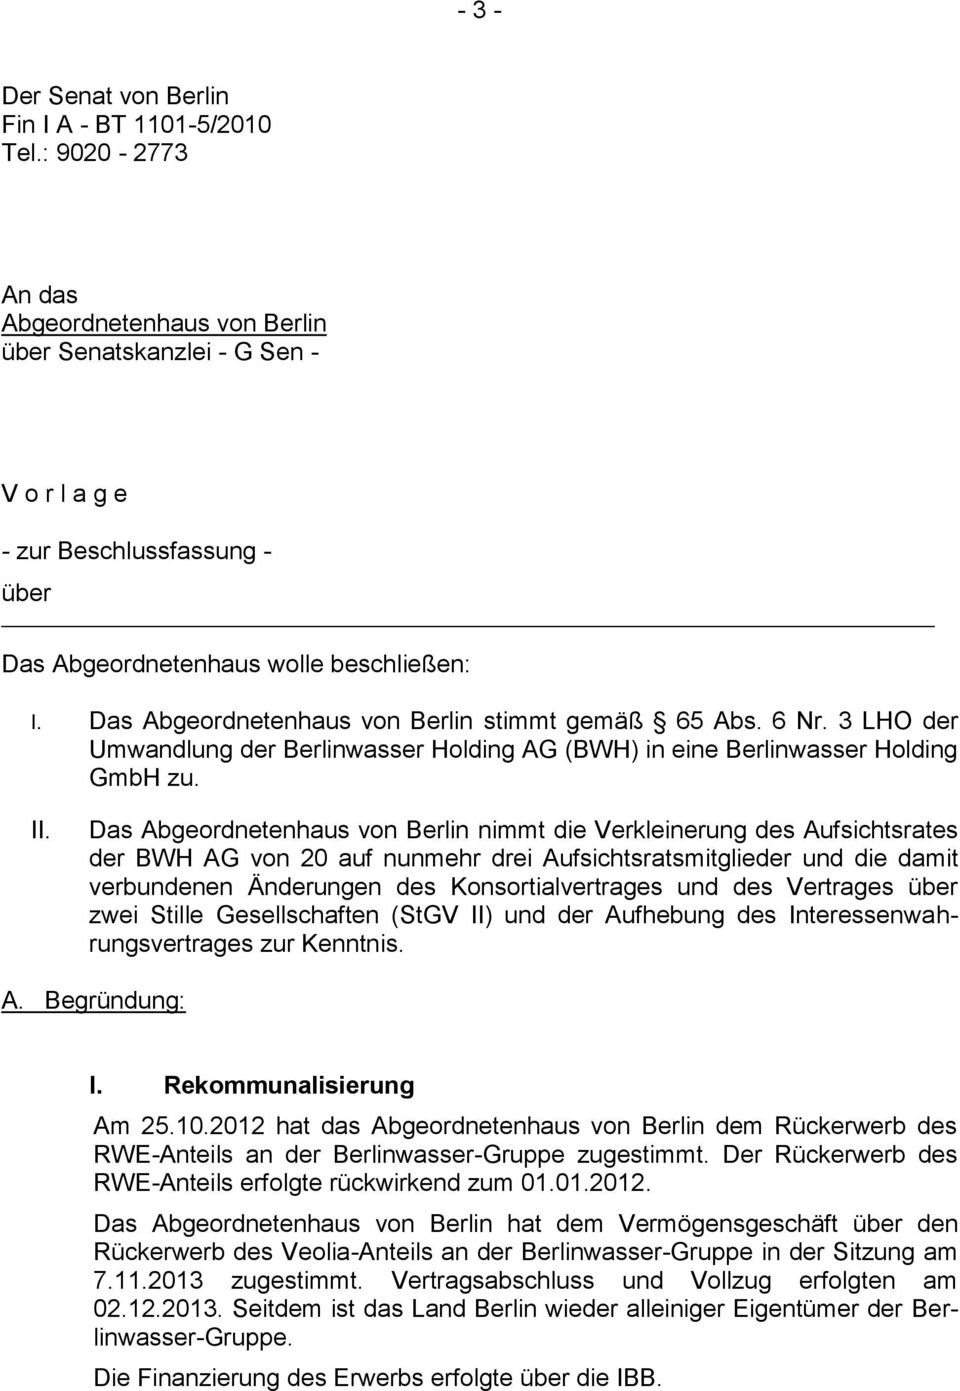 Das Abgeordnetenhaus von Berlin stimmt gemäß 65 Abs. 6 Nr. 3 LHO der Umwandlung der Berlinwasser Holding AG (BWH) in eine Berlinwasser Holding GmbH zu. II.